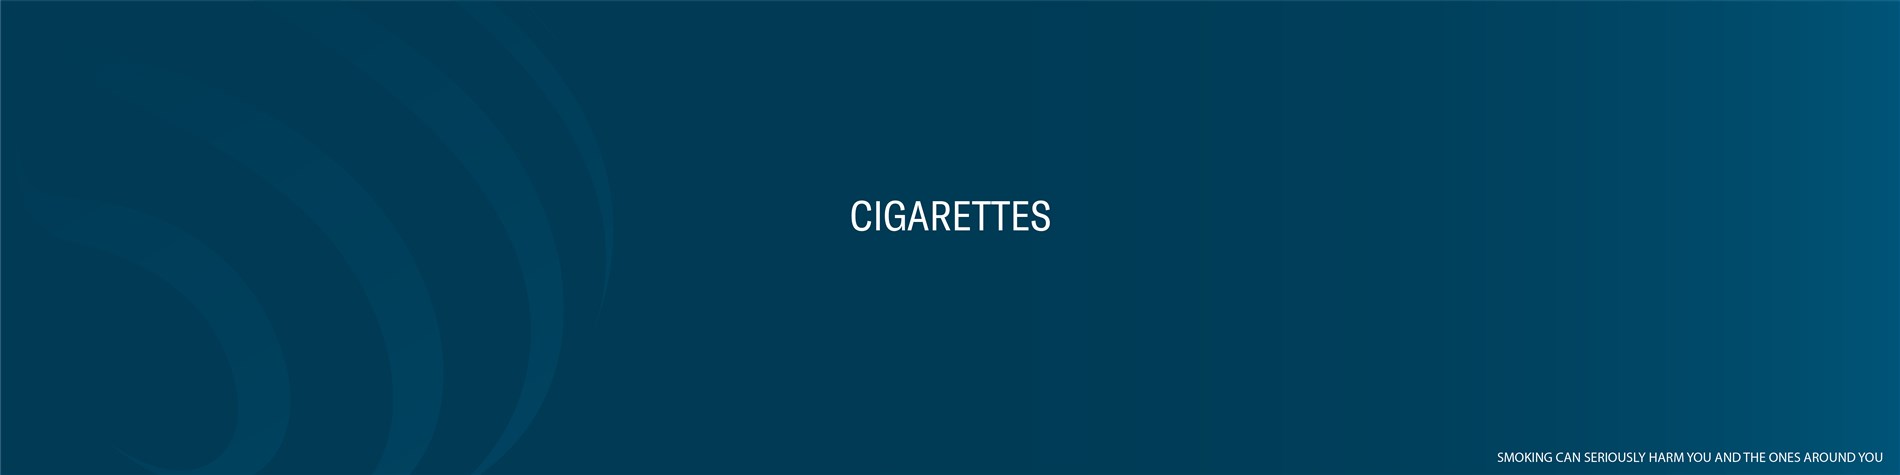 Fumare con STILE: MARLBORO ROSSE KS FULL FLAVOUR,VERSIONE AMERICANA